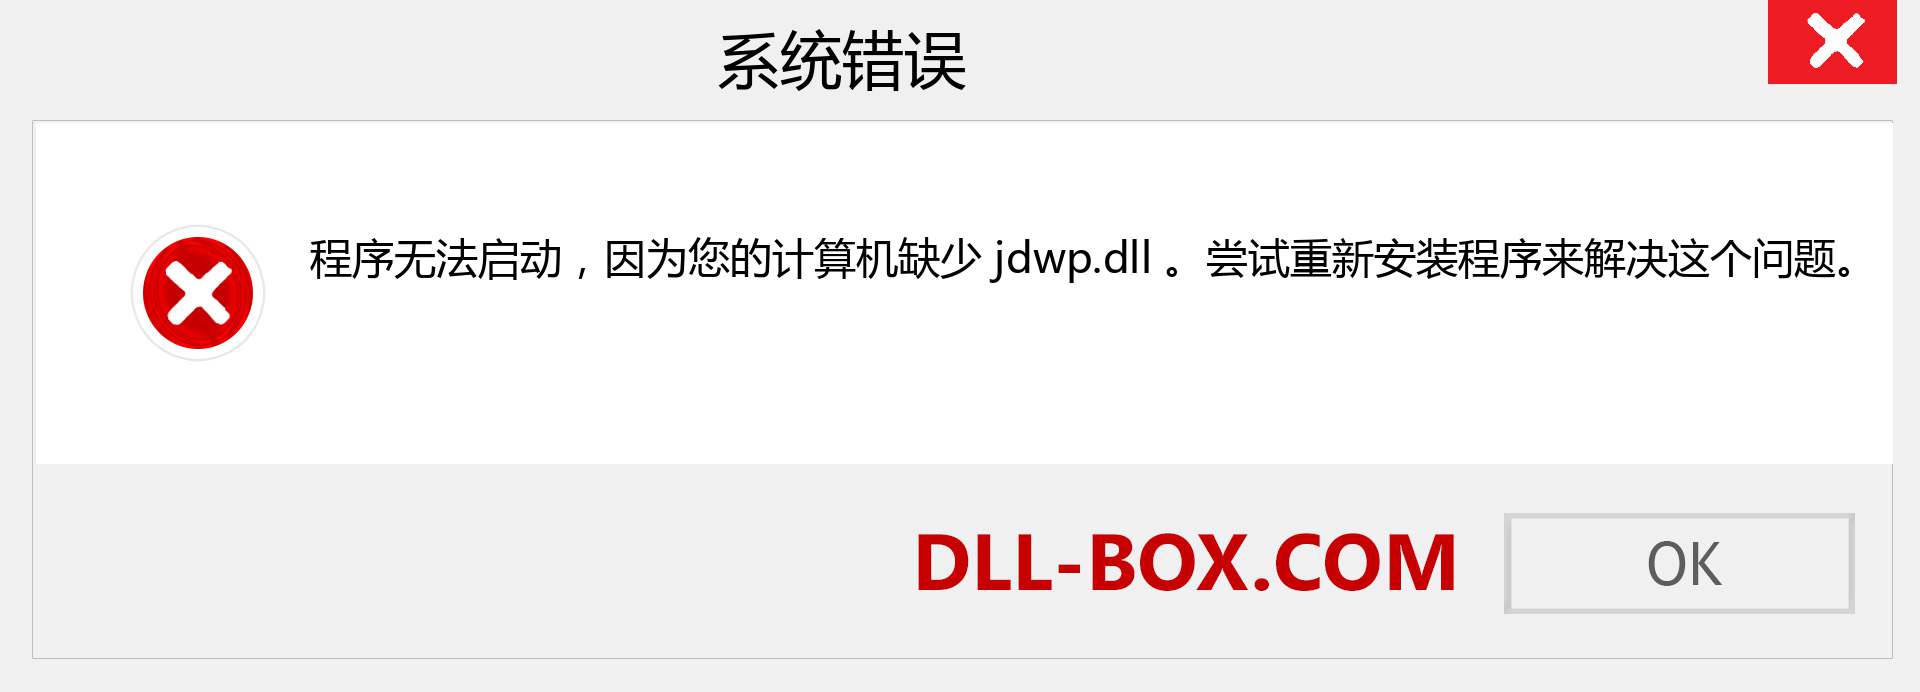 jdwp.dll 文件丢失？。 适用于 Windows 7、8、10 的下载 - 修复 Windows、照片、图像上的 jdwp dll 丢失错误